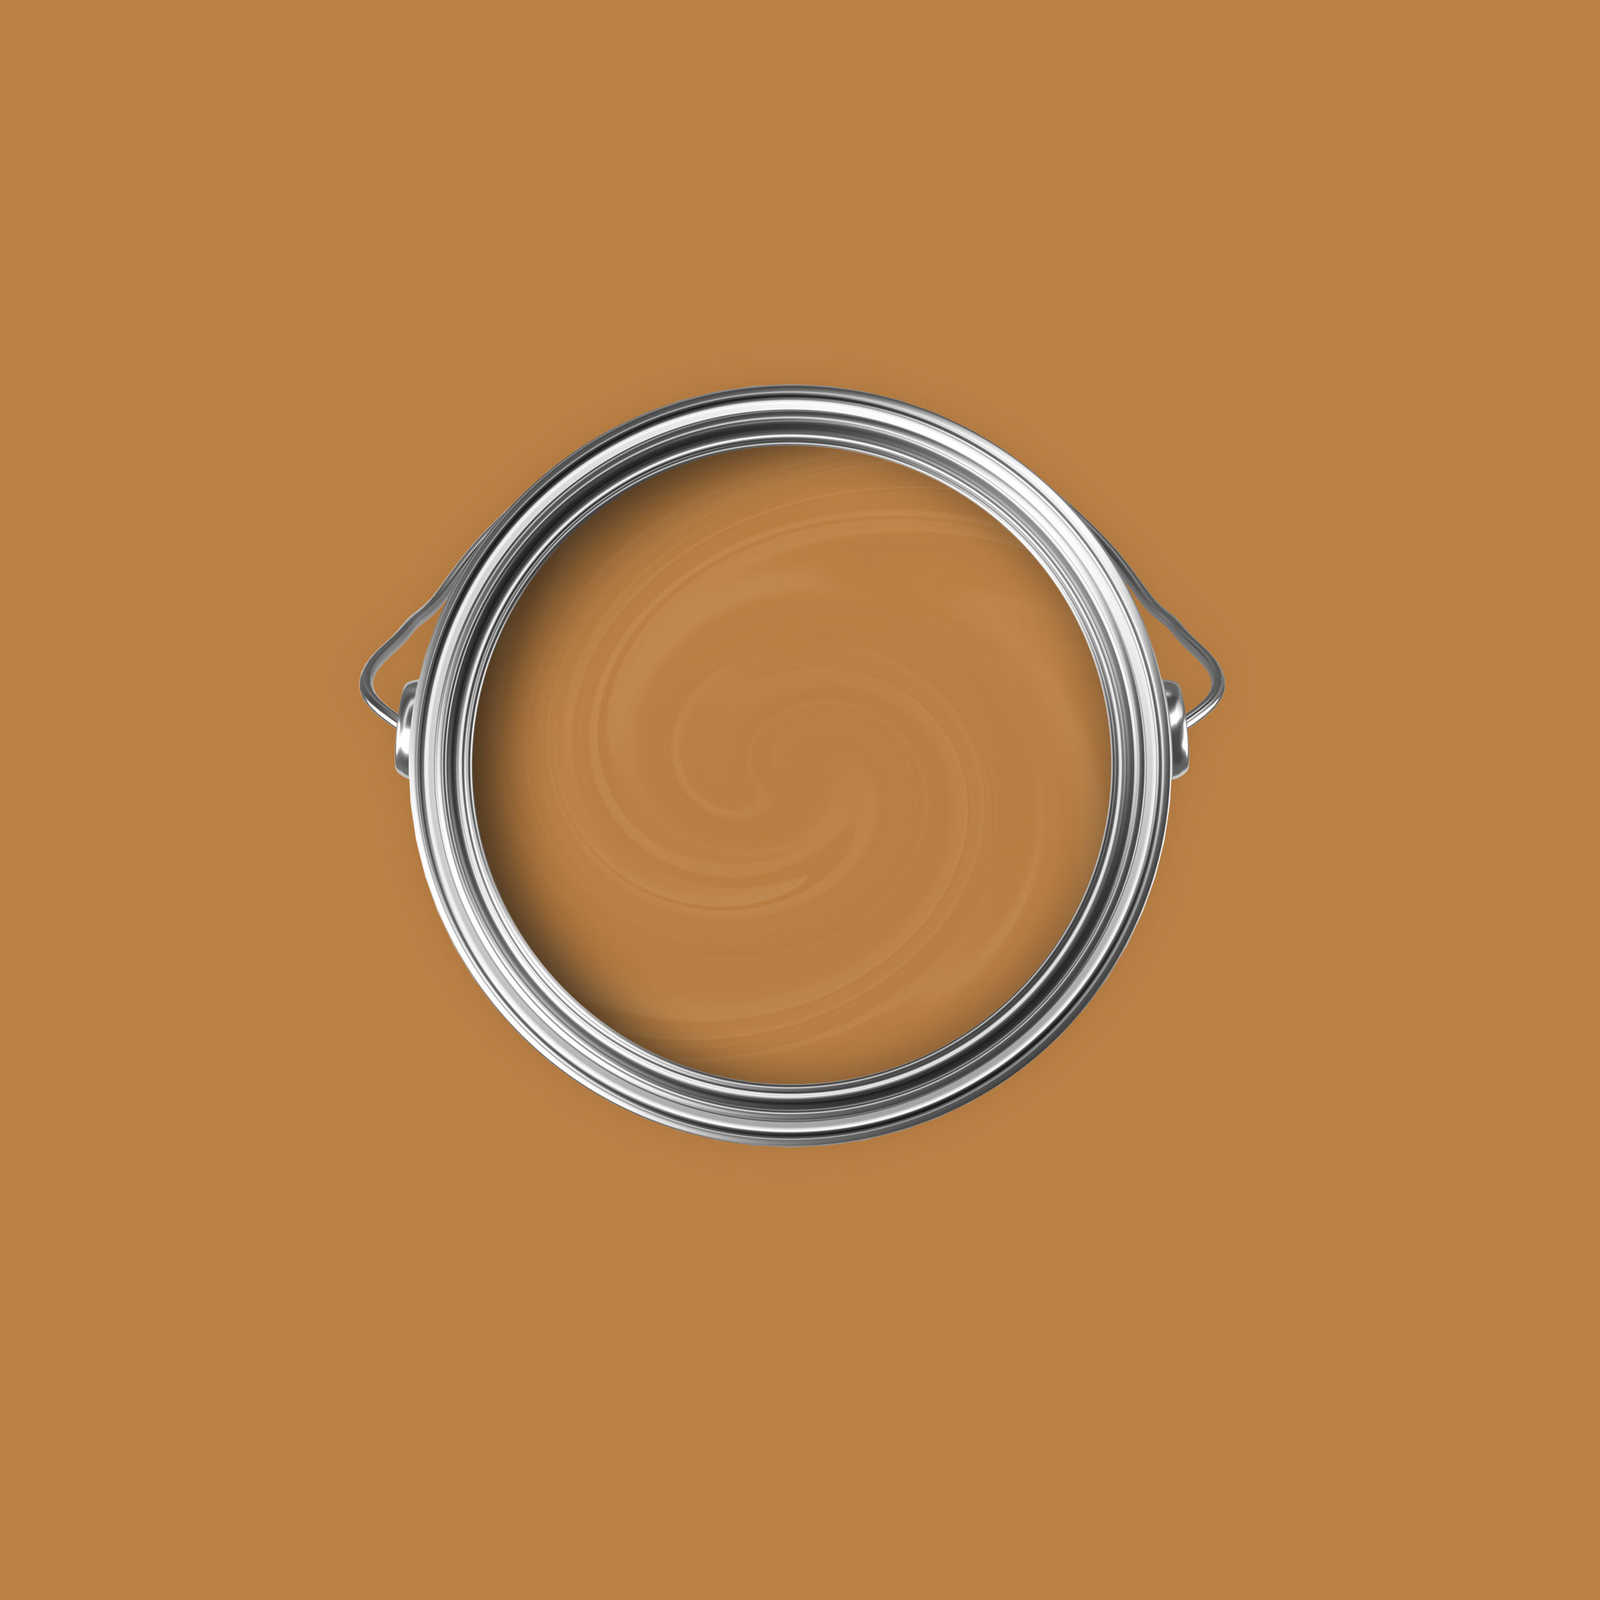             Pintura mural Premium marrón claro fuerte »Beige Orange/Sassy Saffron« NW814 – 2,5 litro
        